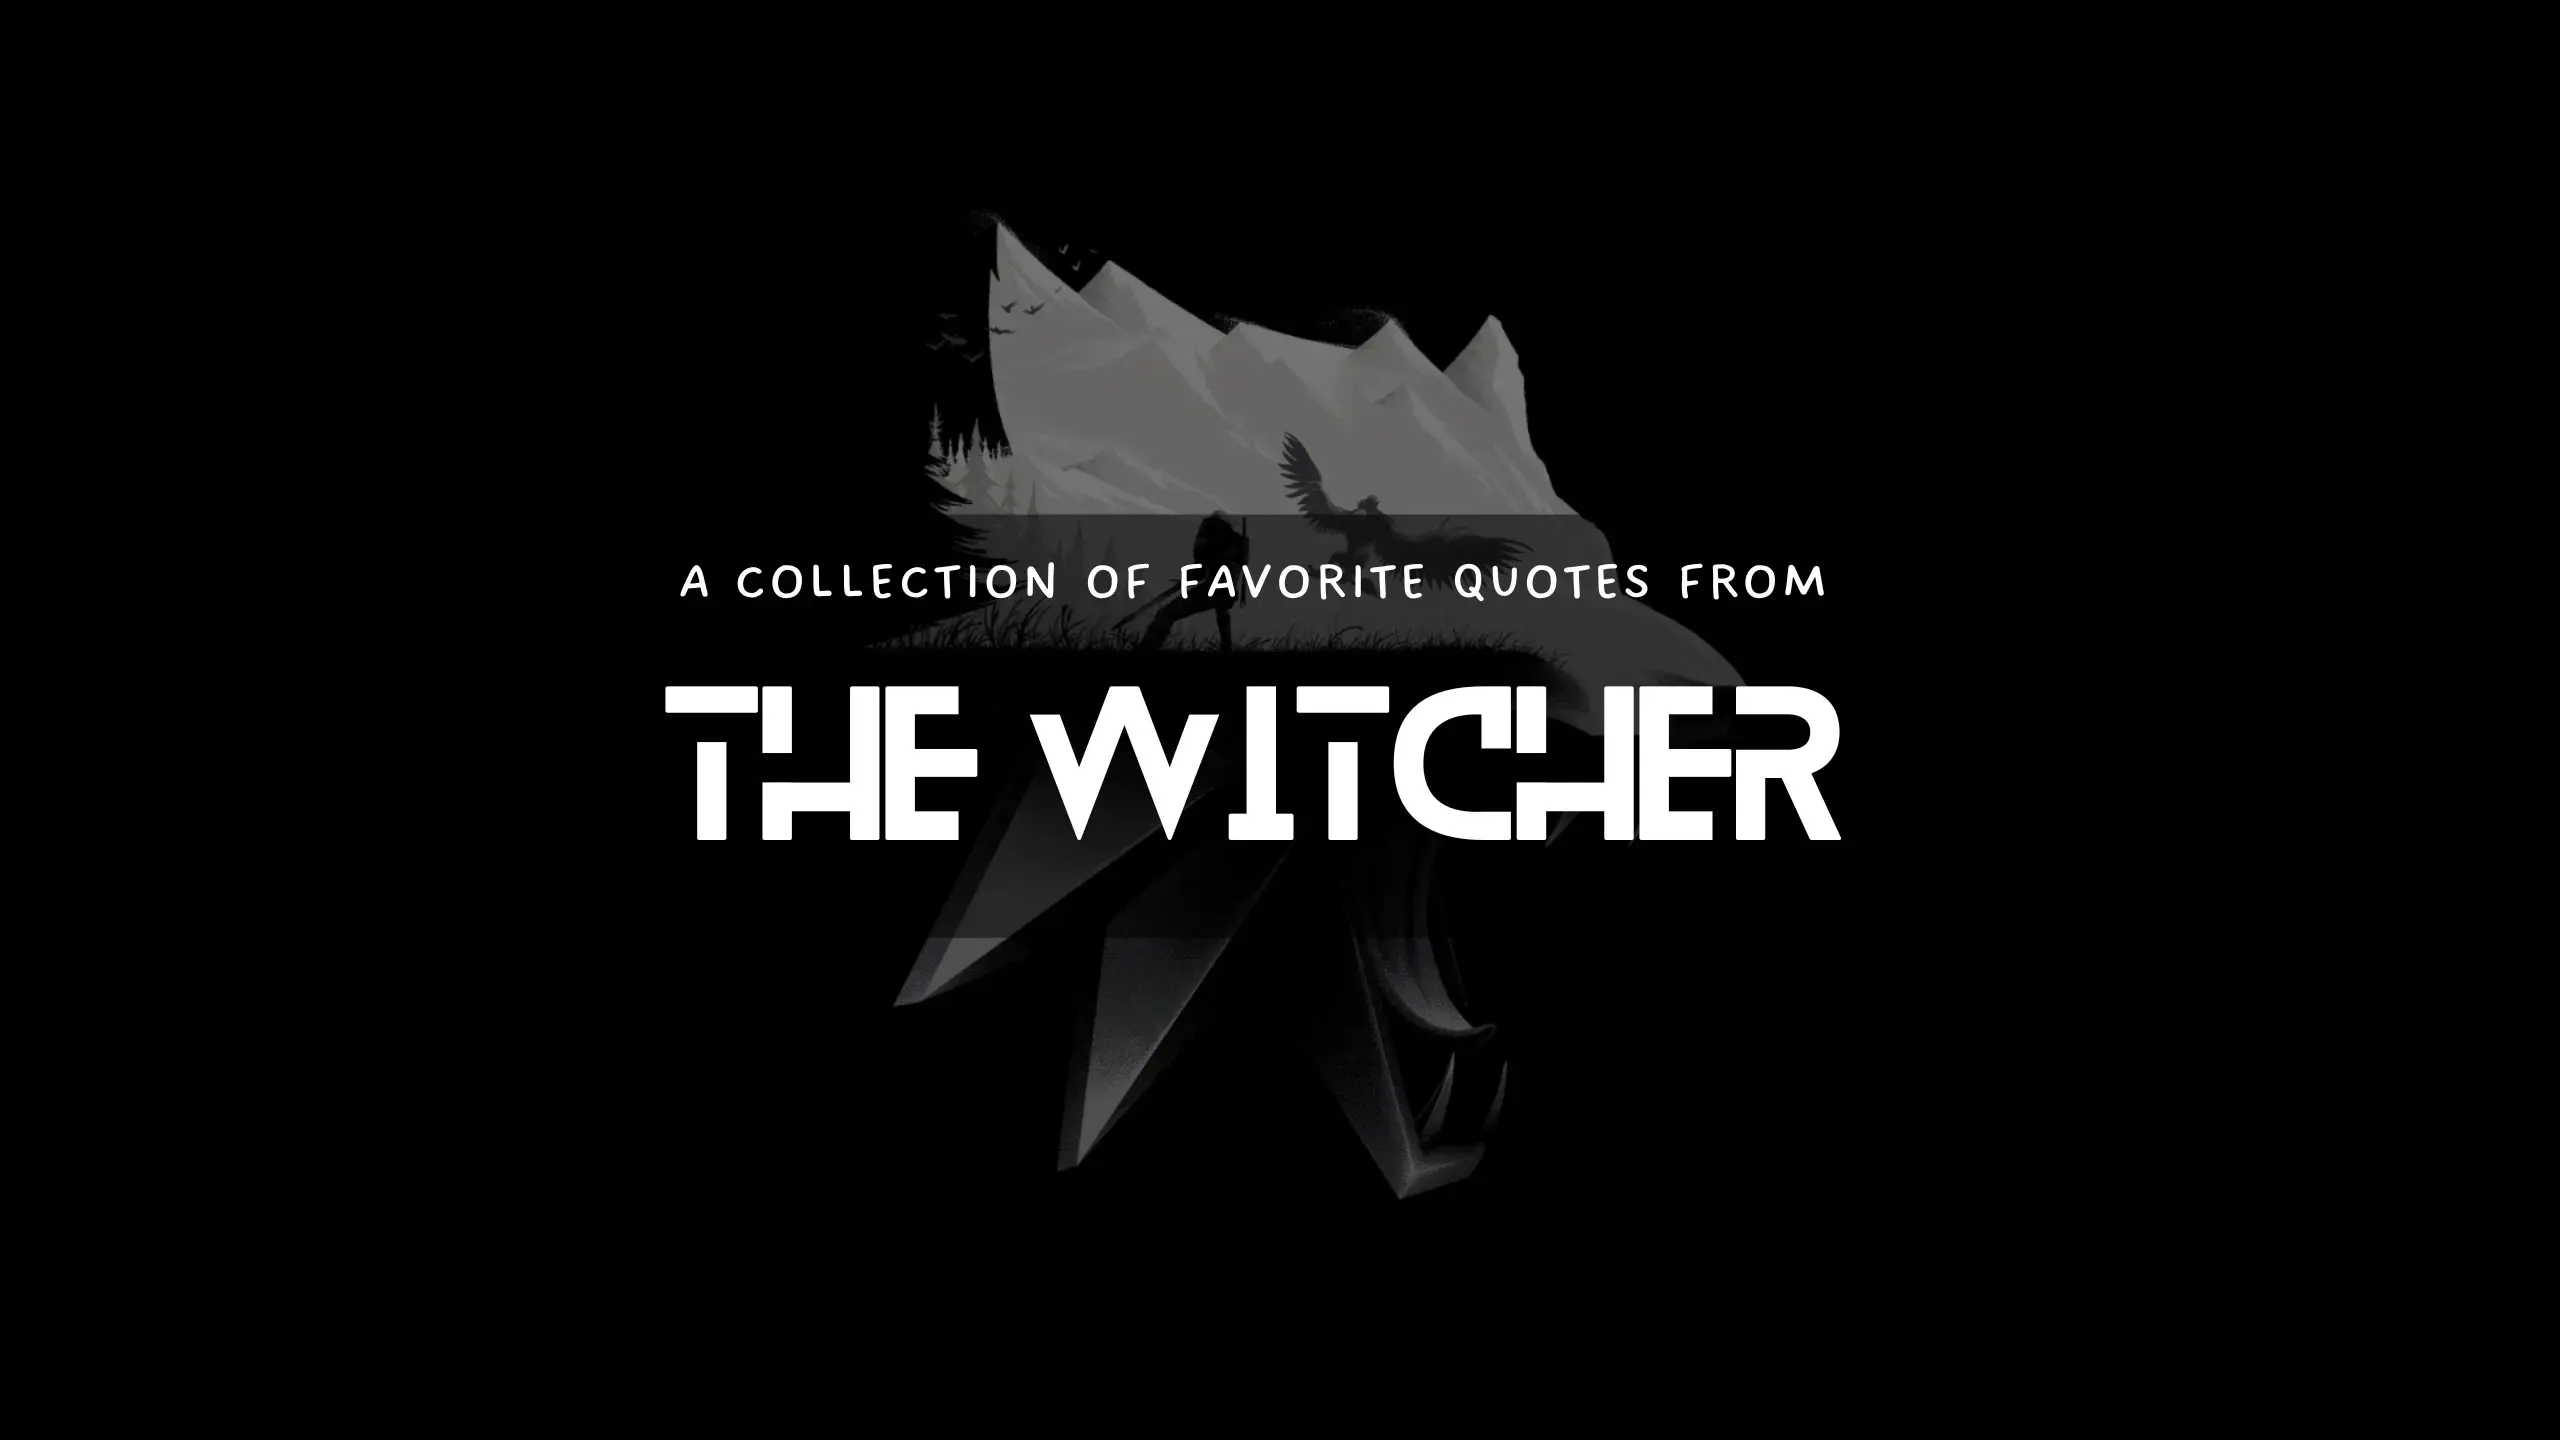 The Witcher Series by Andrzej Sapkowski